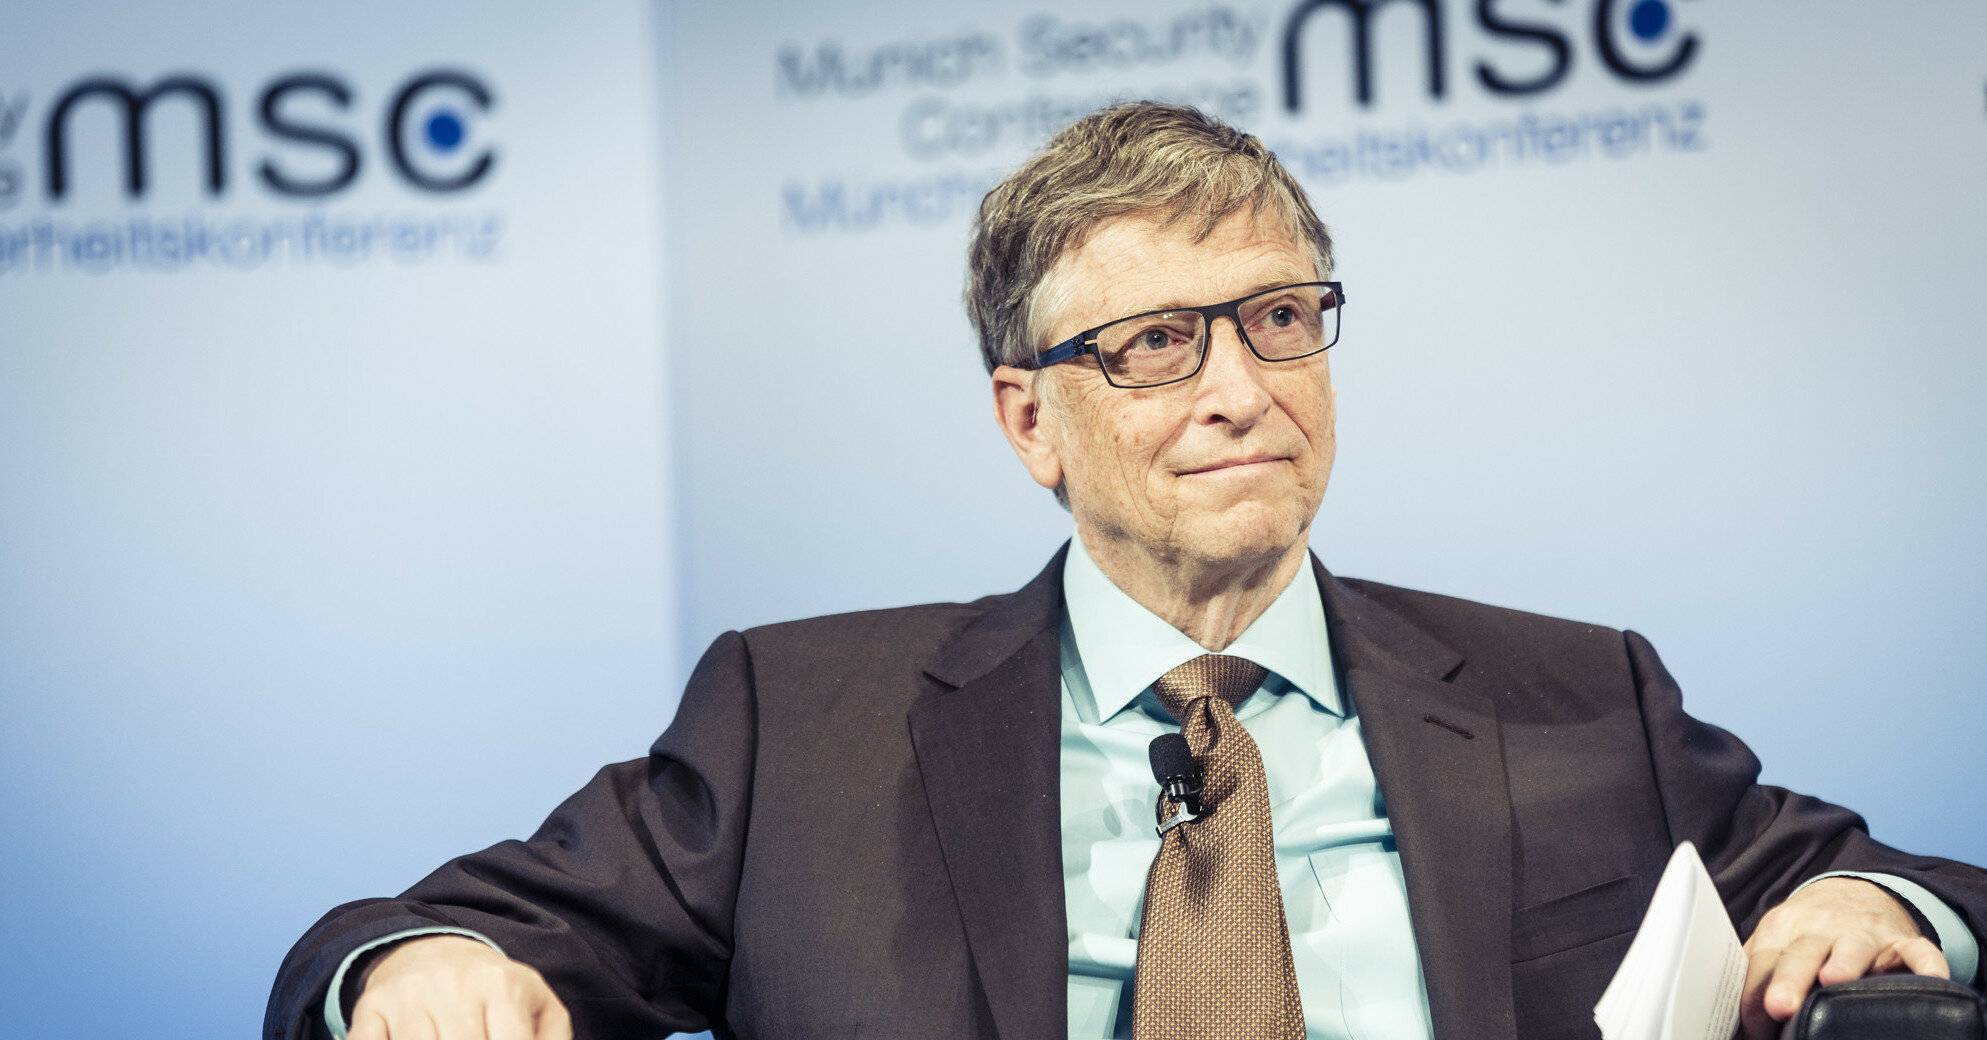 Білл Гейтс оголосив про розлучення зі своєю дружиною